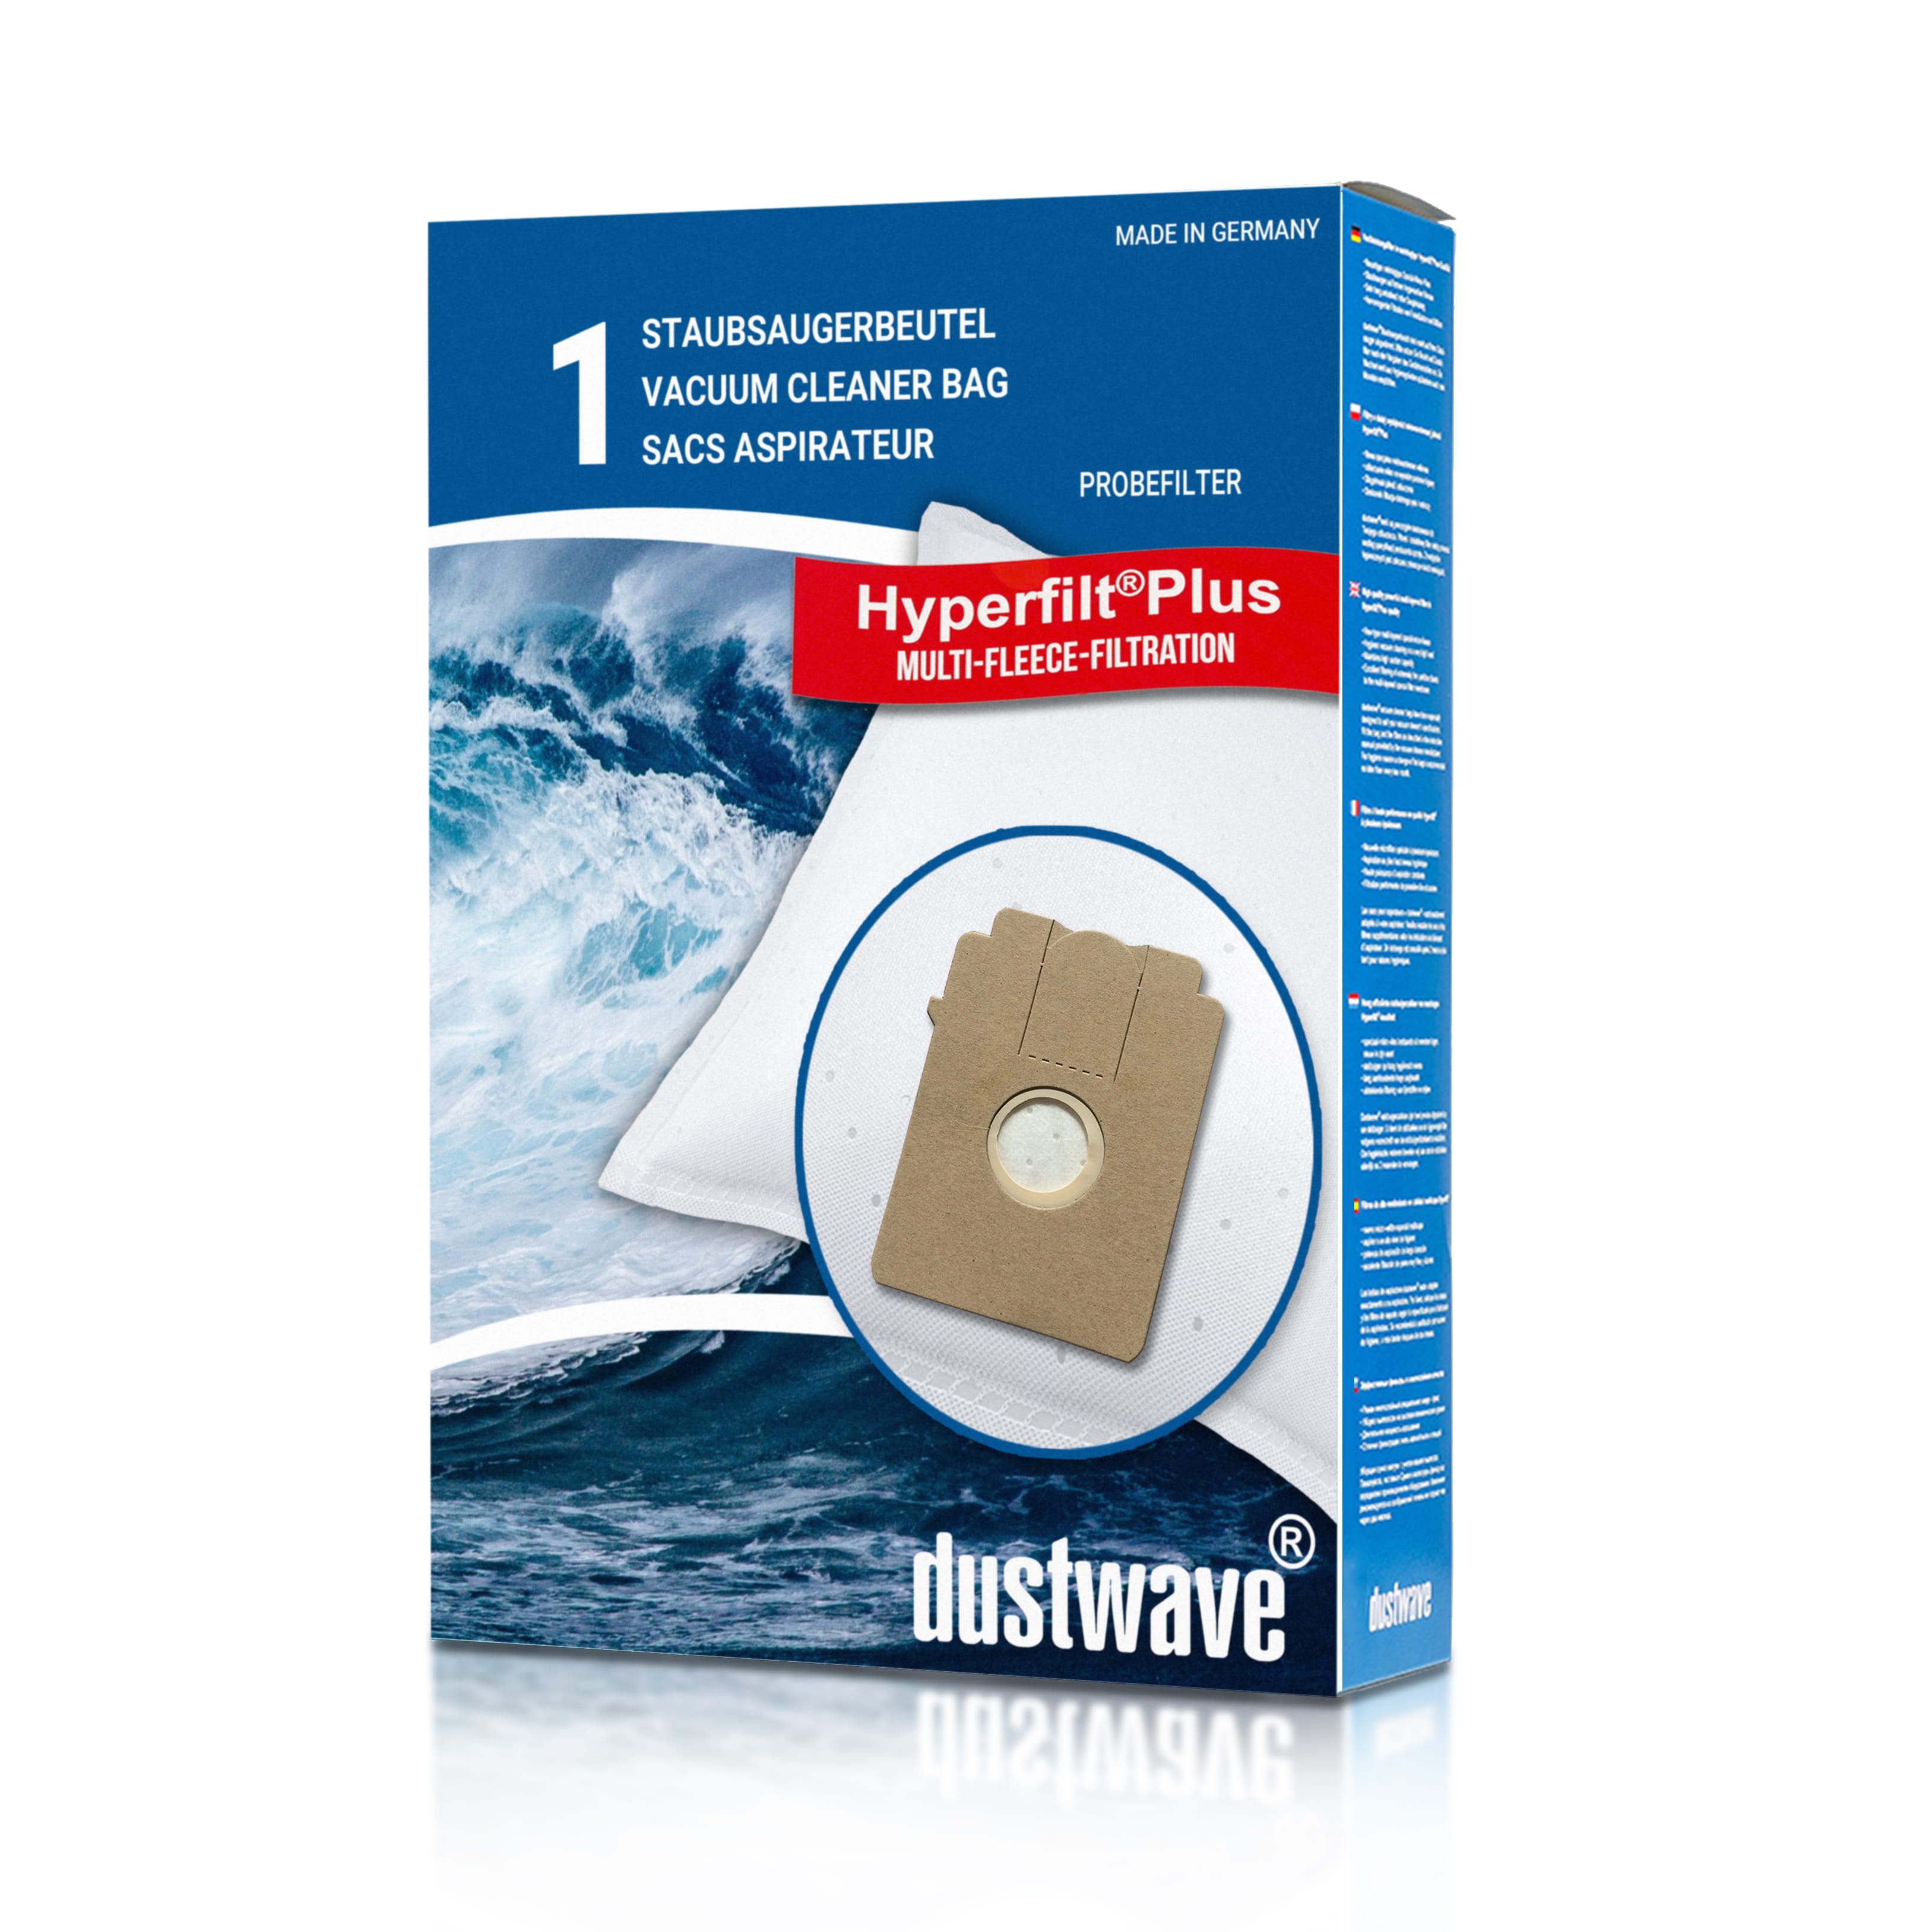 Dustwave® 1 Staubsaugerbeutel für Base BA 2001 - hocheffizient mit Hygieneverschluss - Made in Germany